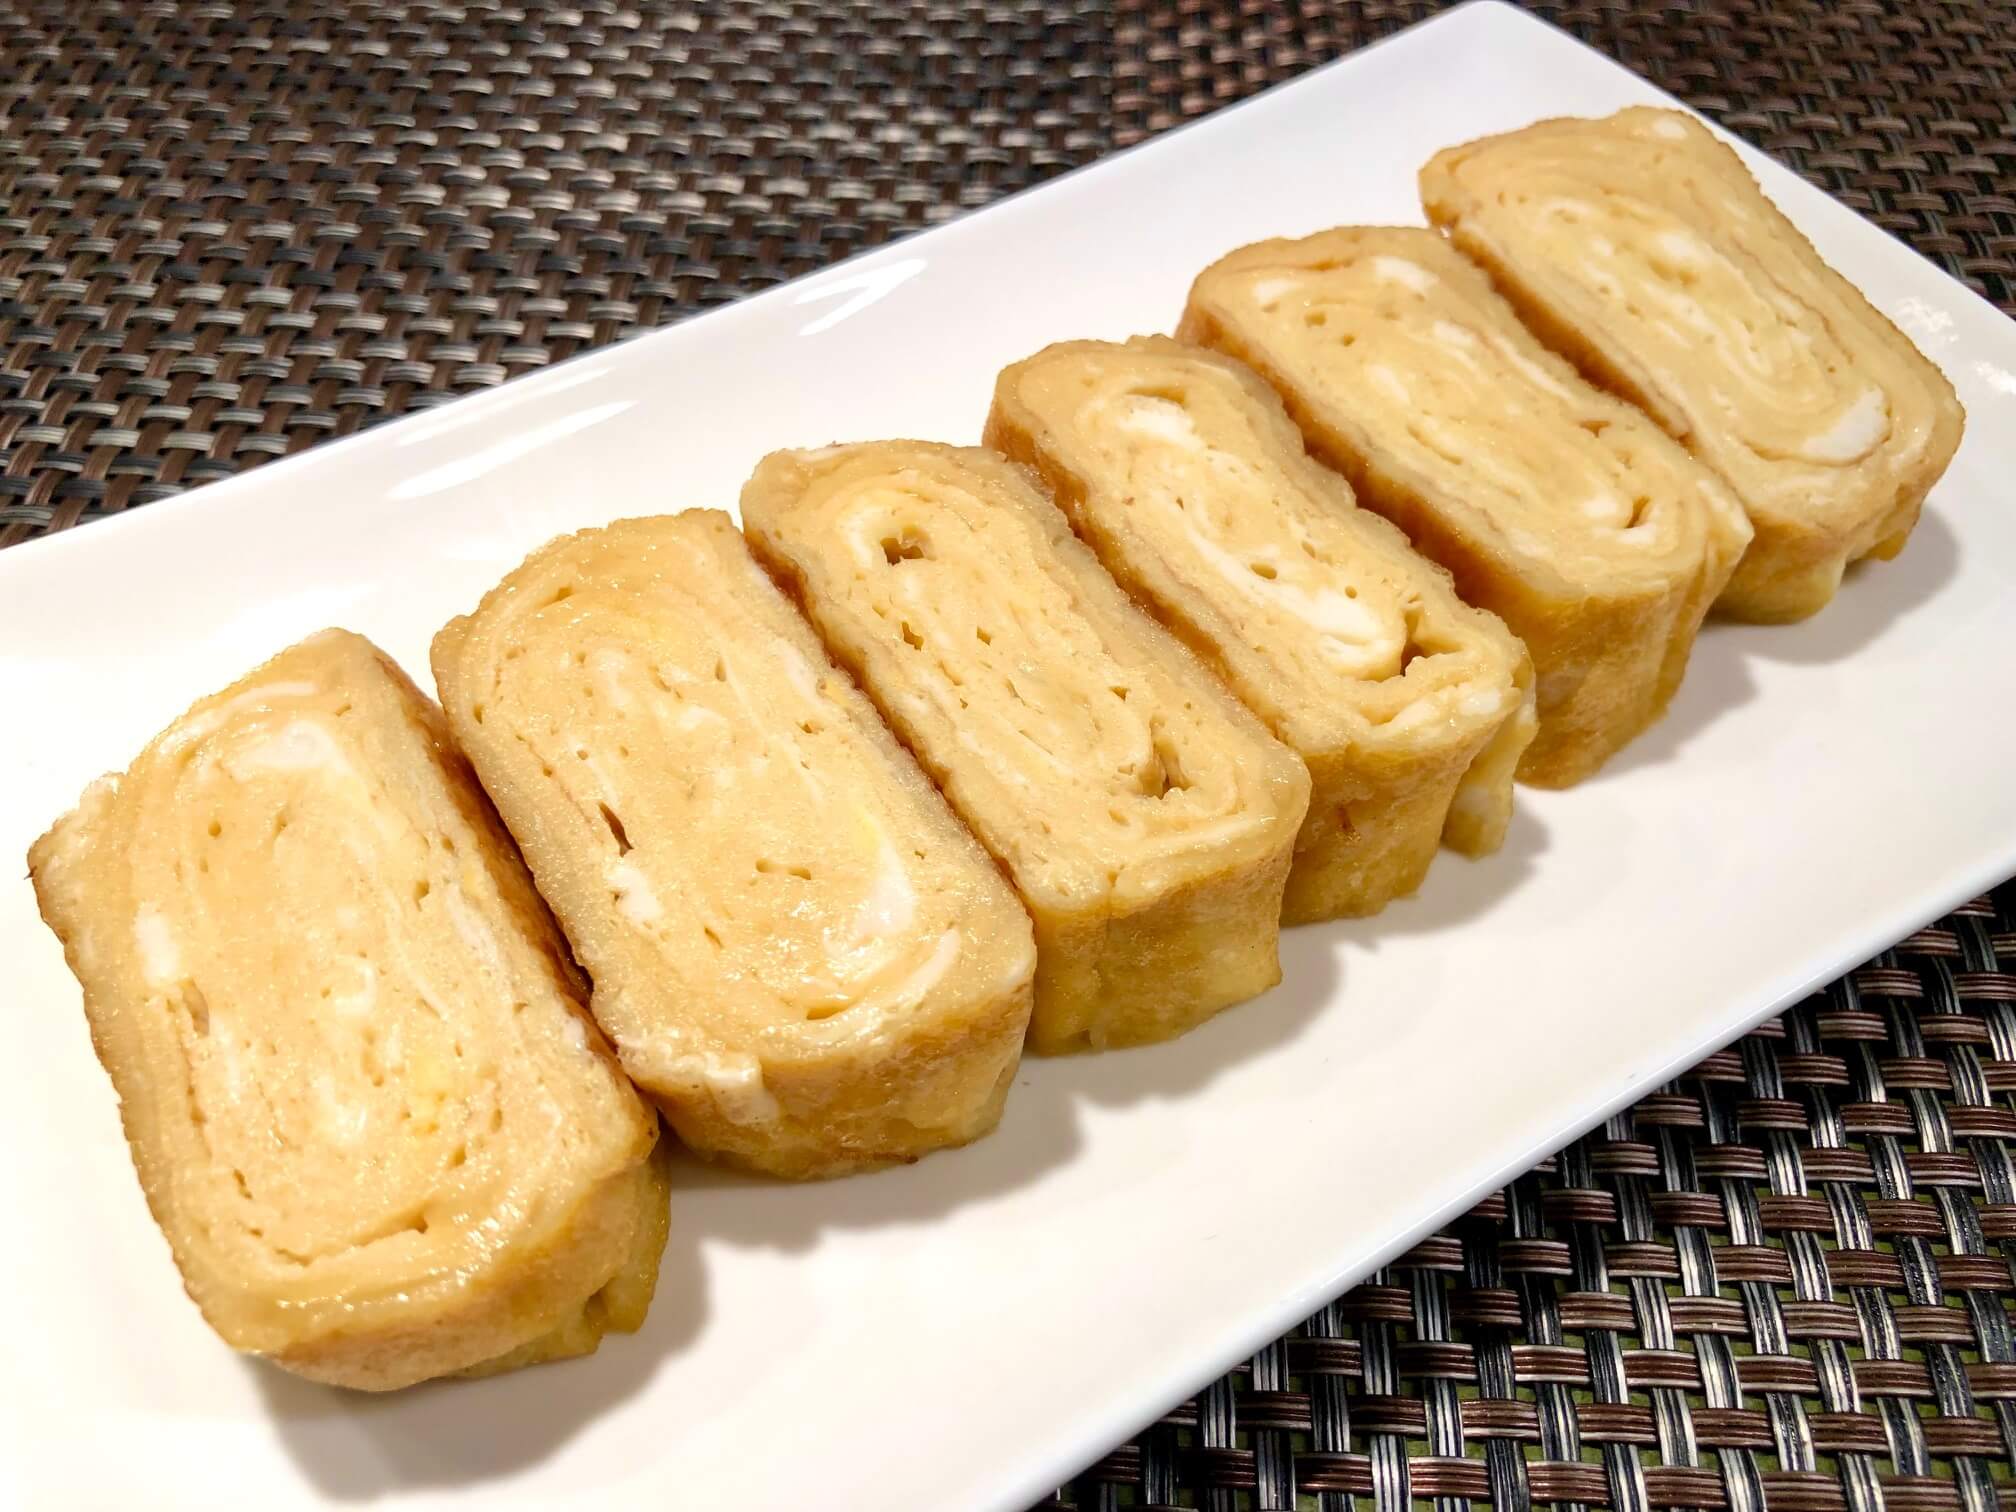 Japanese omelet “Tamagoyaki”